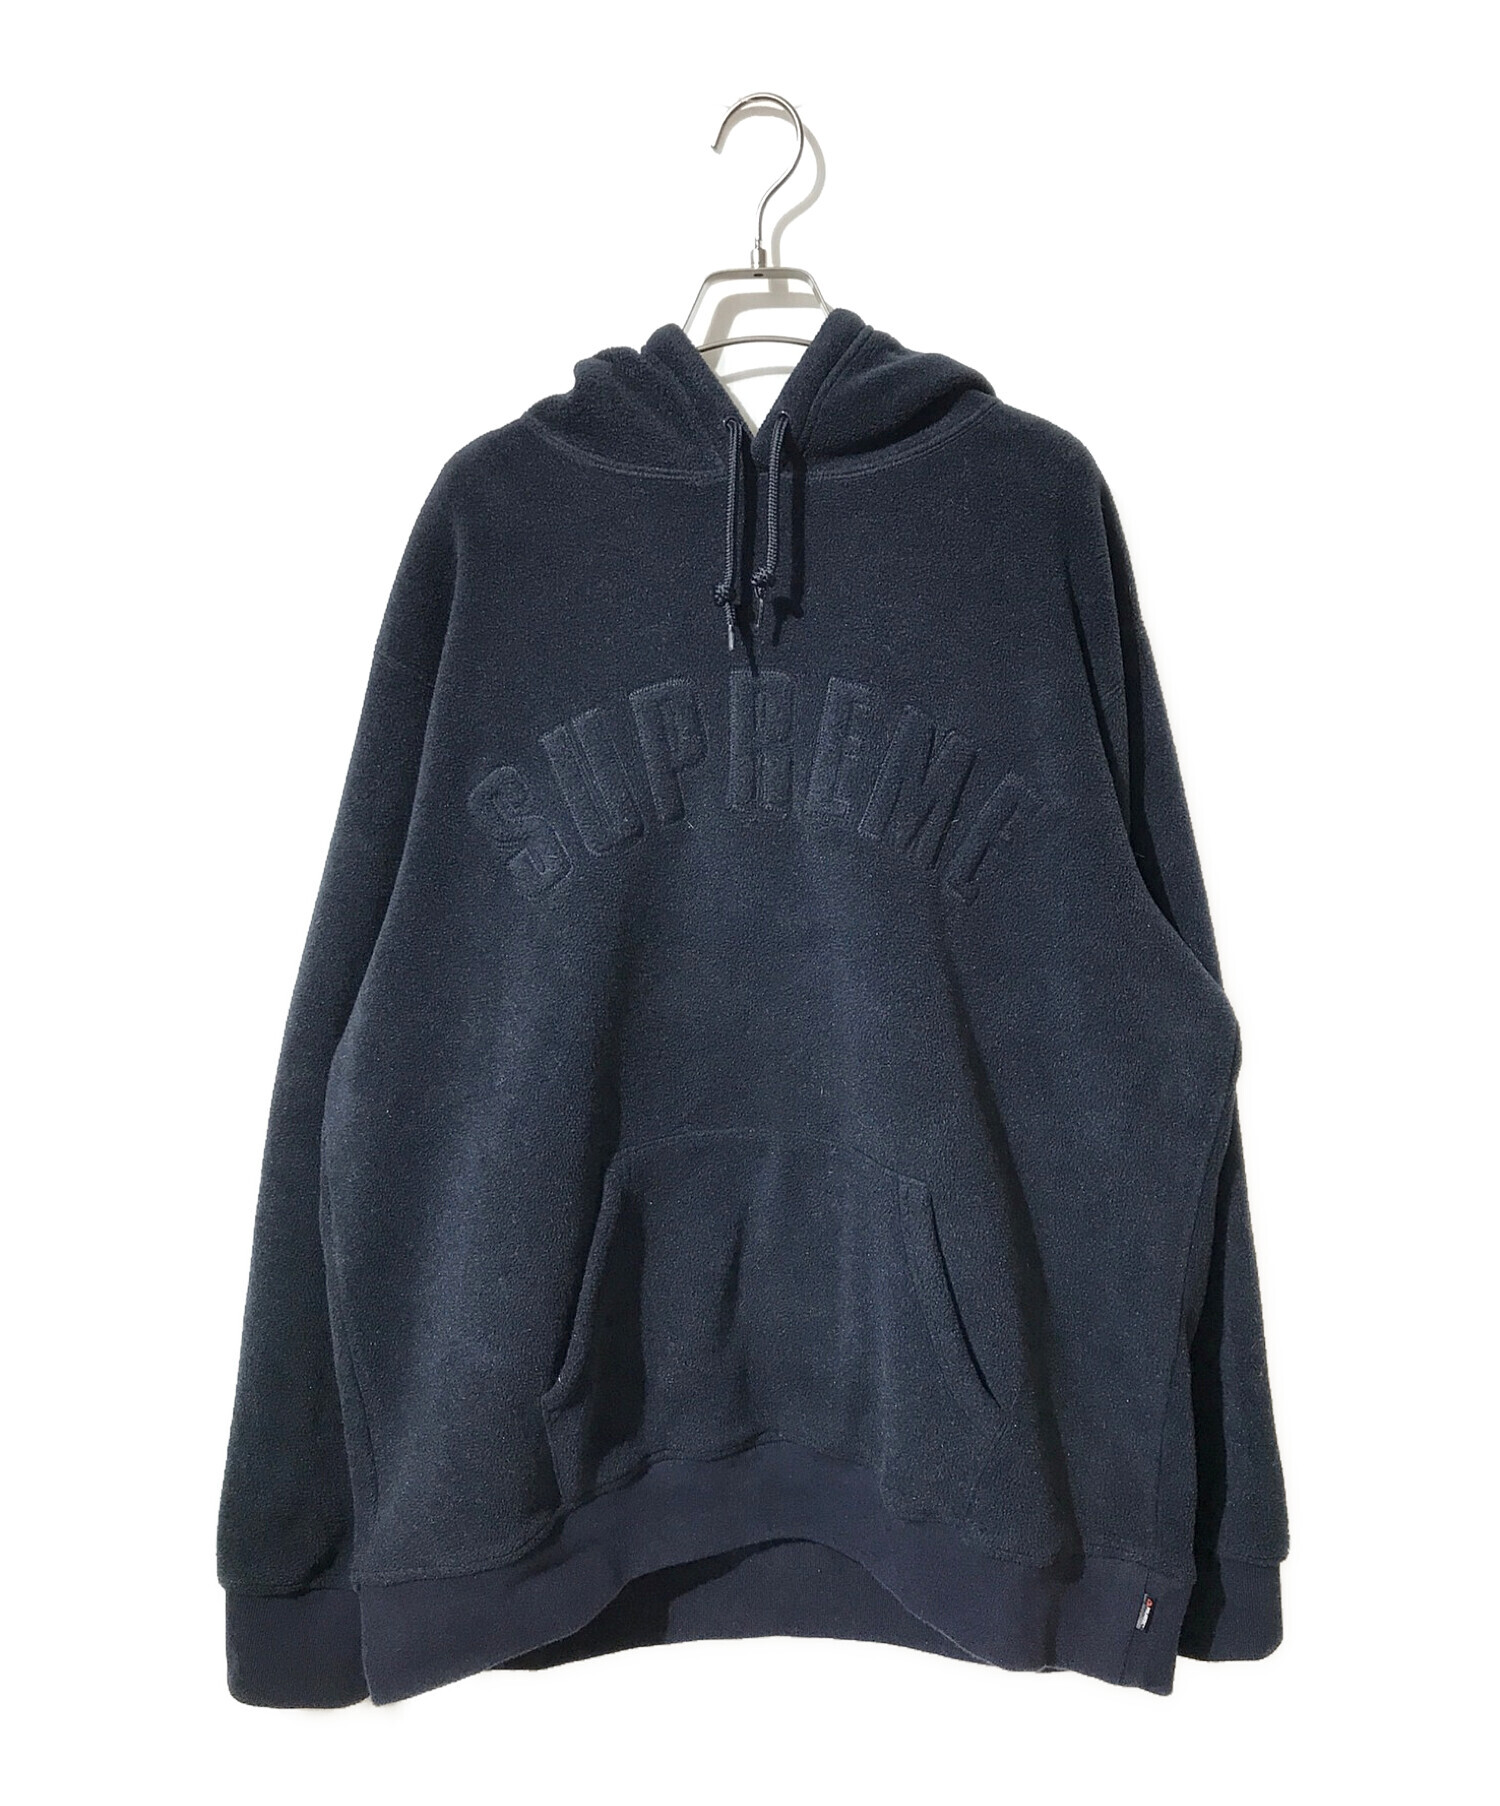 SUPREME (シュプリーム) Polartec Hooded Sweatshirt/ポーラテックフーデッドスウェットシャツ ネイビー サイズ:XL